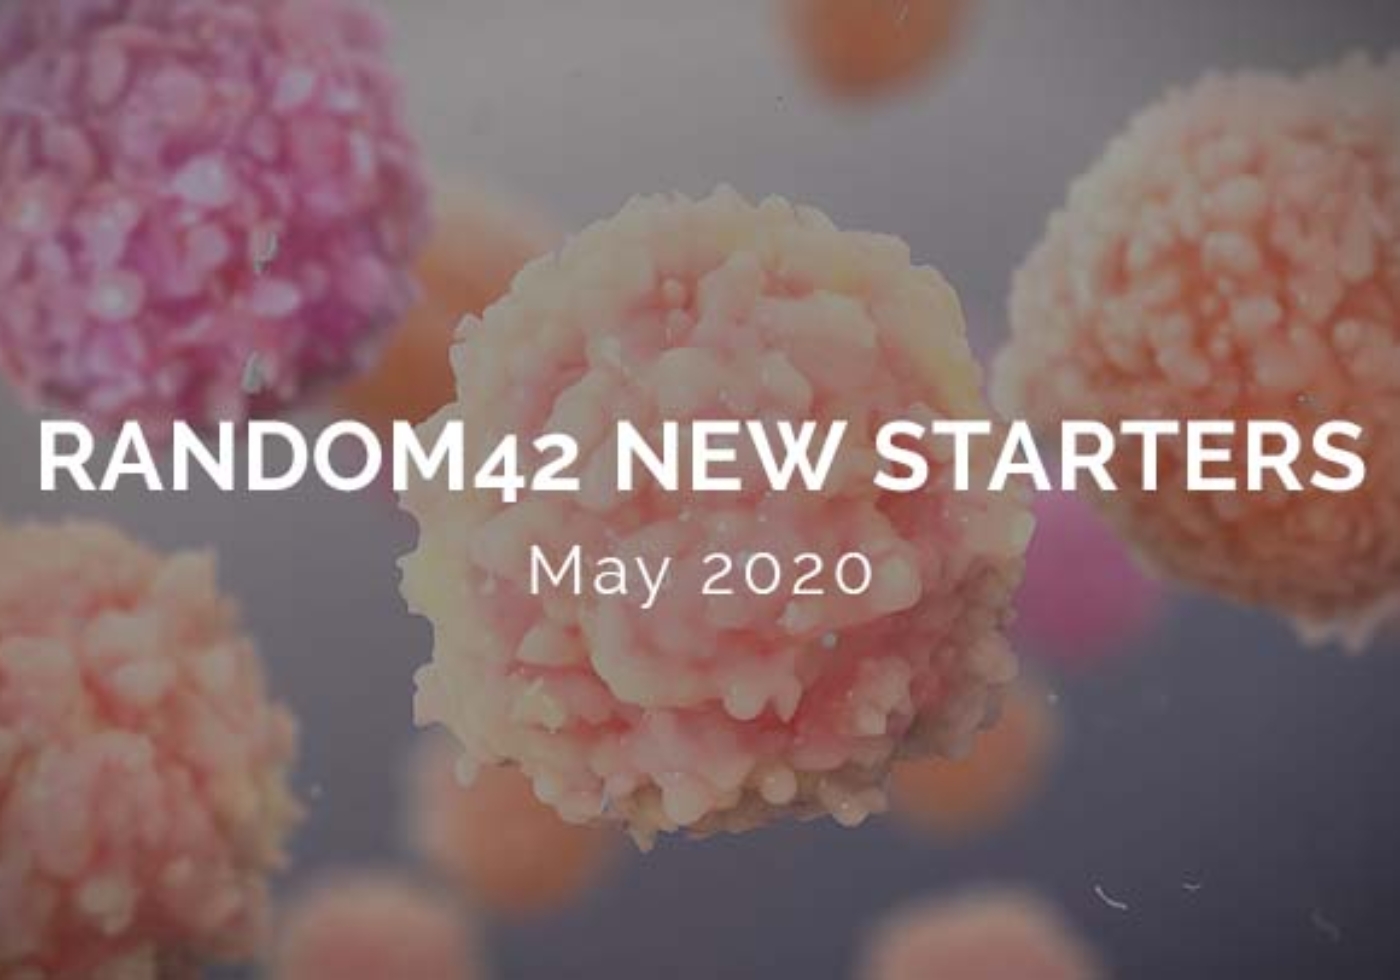 Random42 New Starters May 2020 Logo